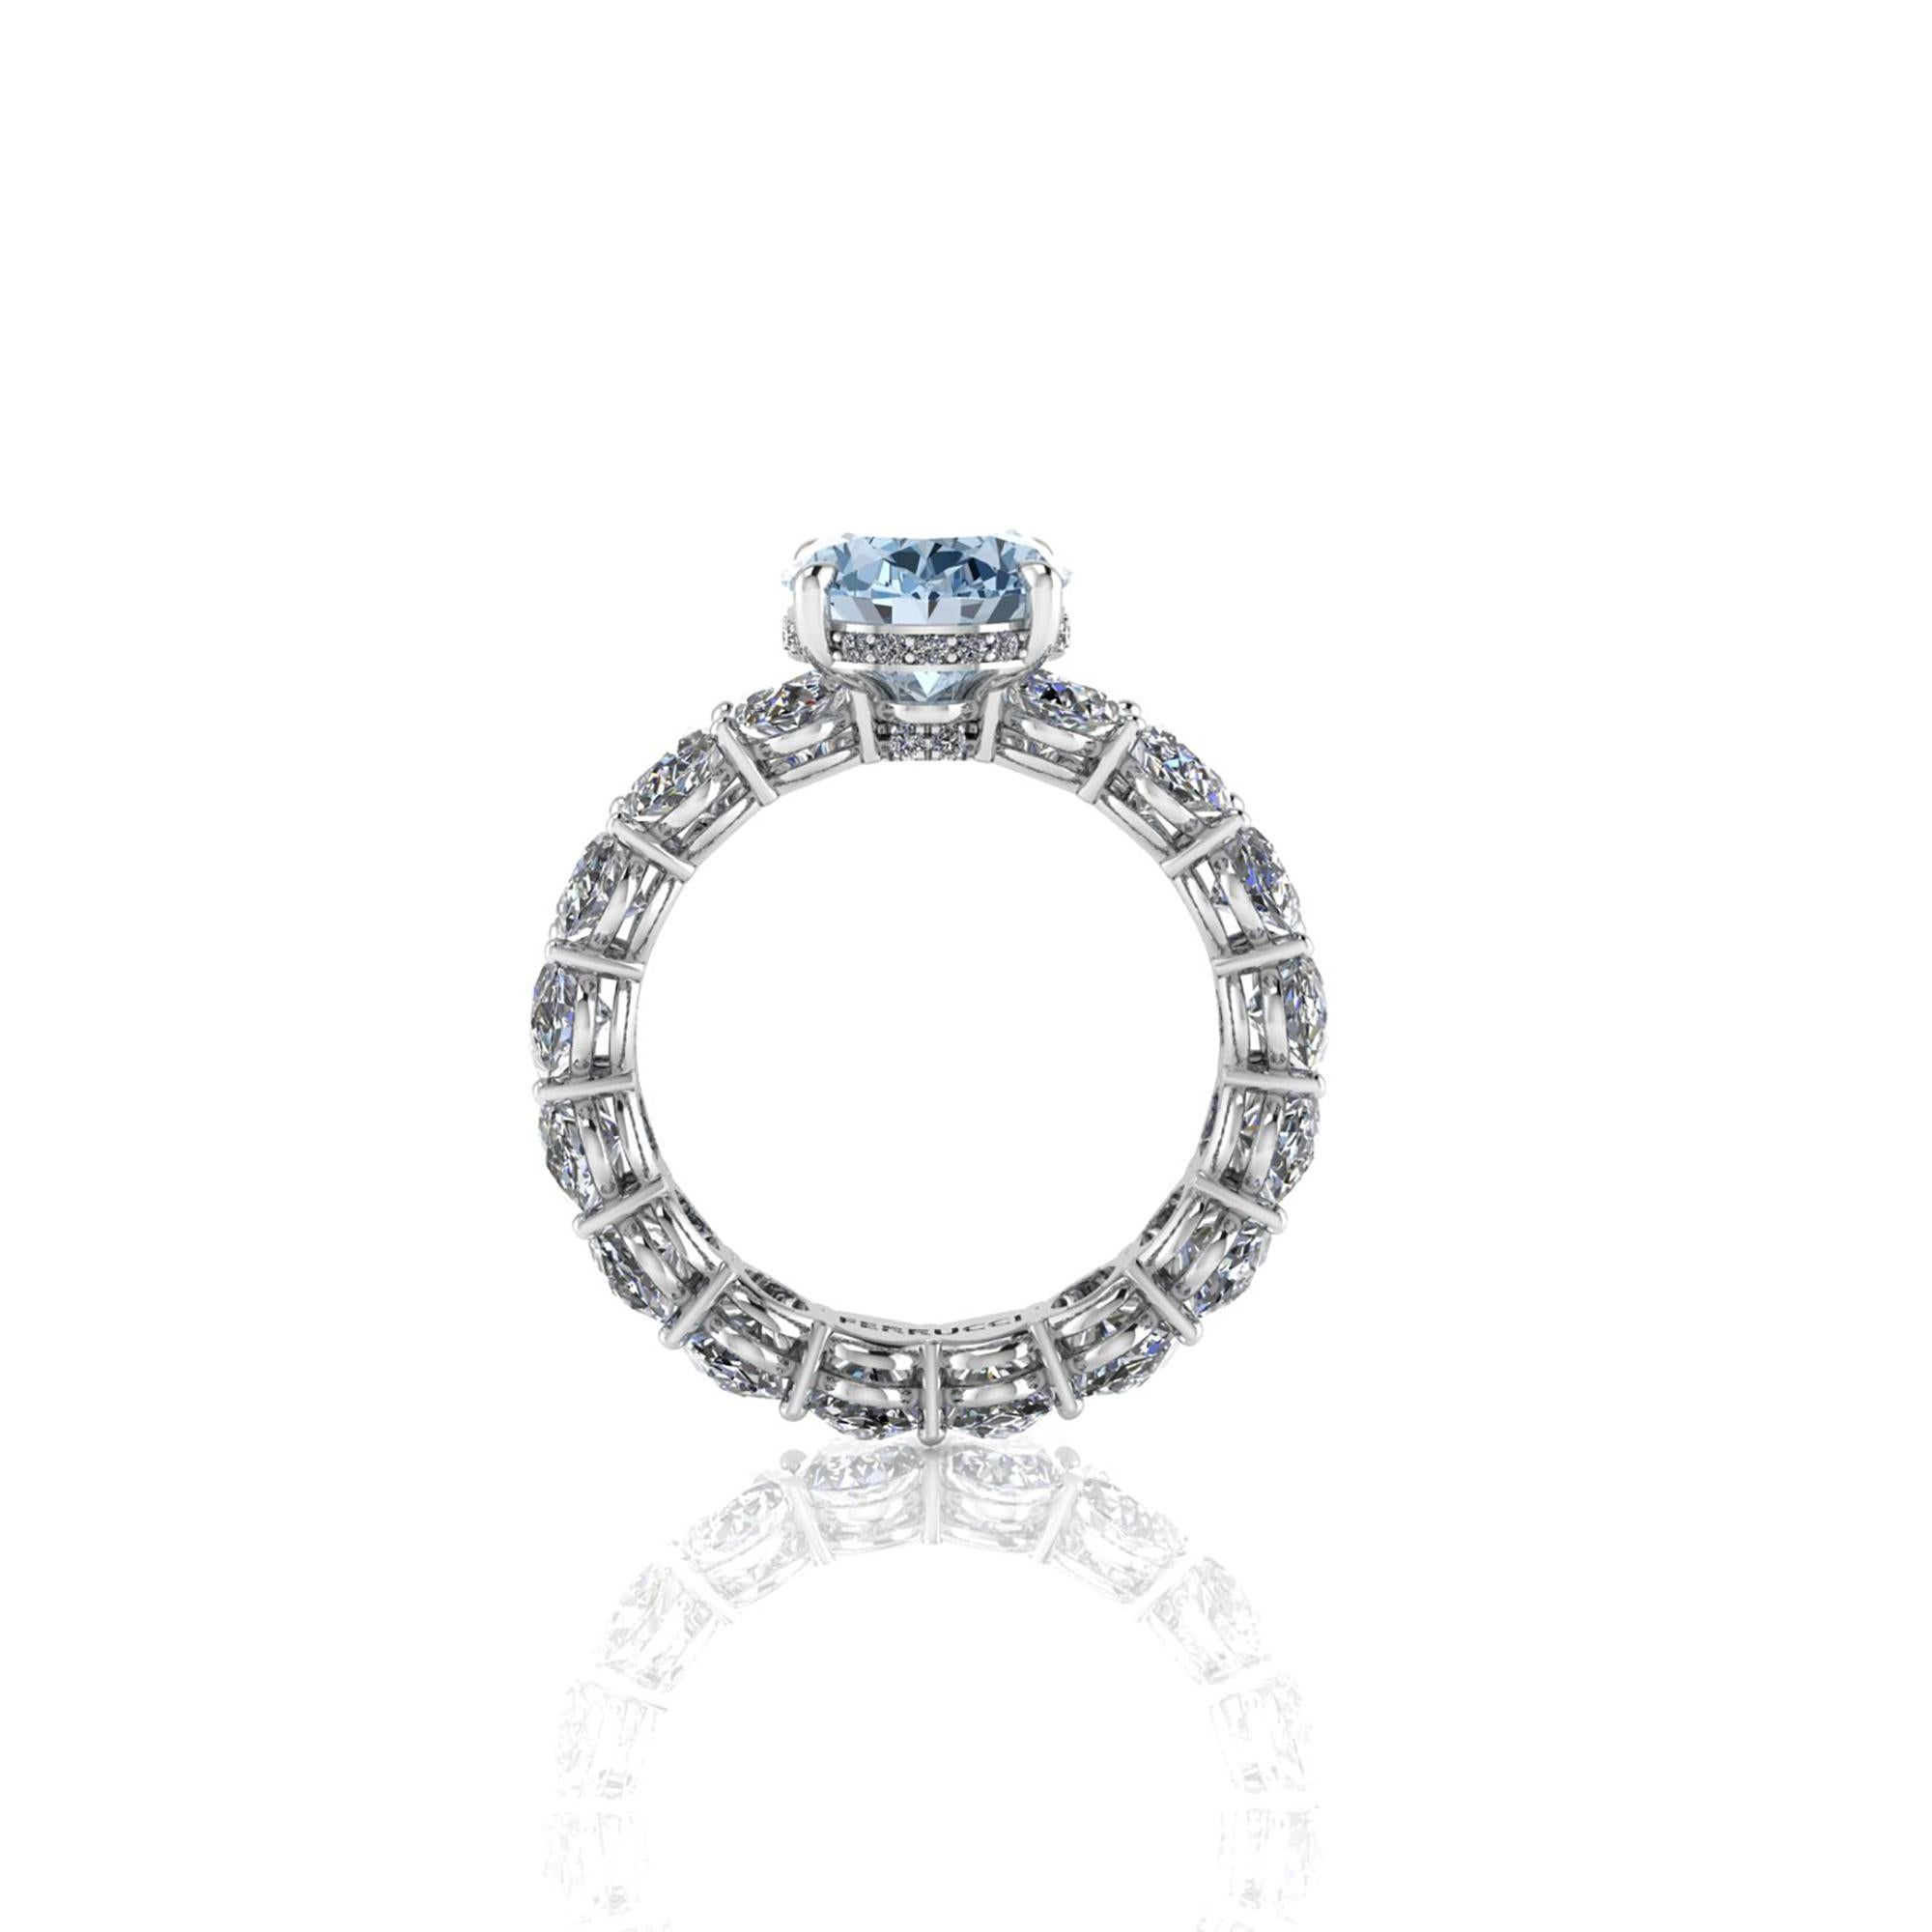 2.8 carat oval diamond ring